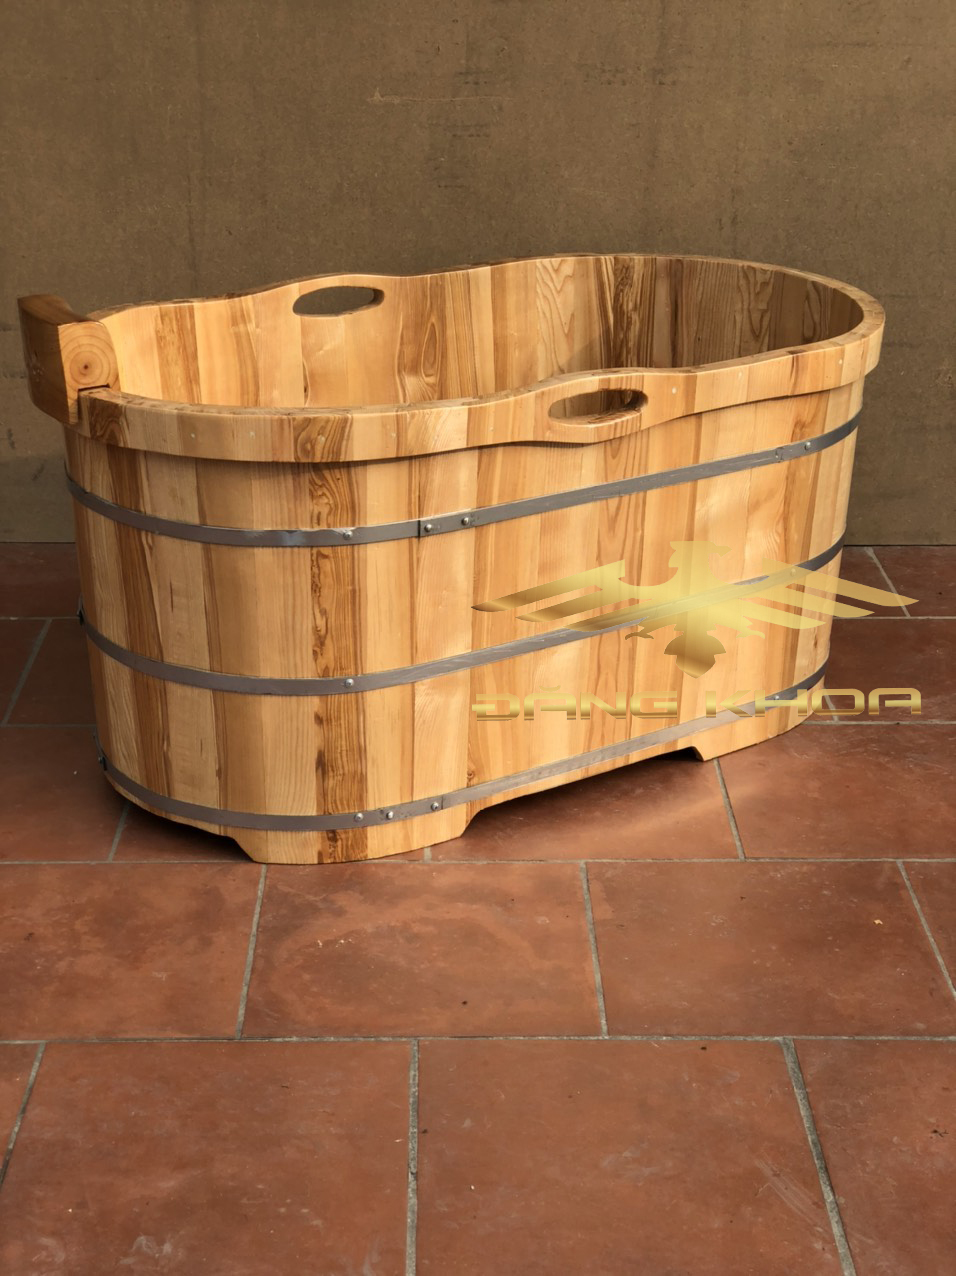 Liên hệ đơn vị cung cấp bồn tắm gỗ chất lượng